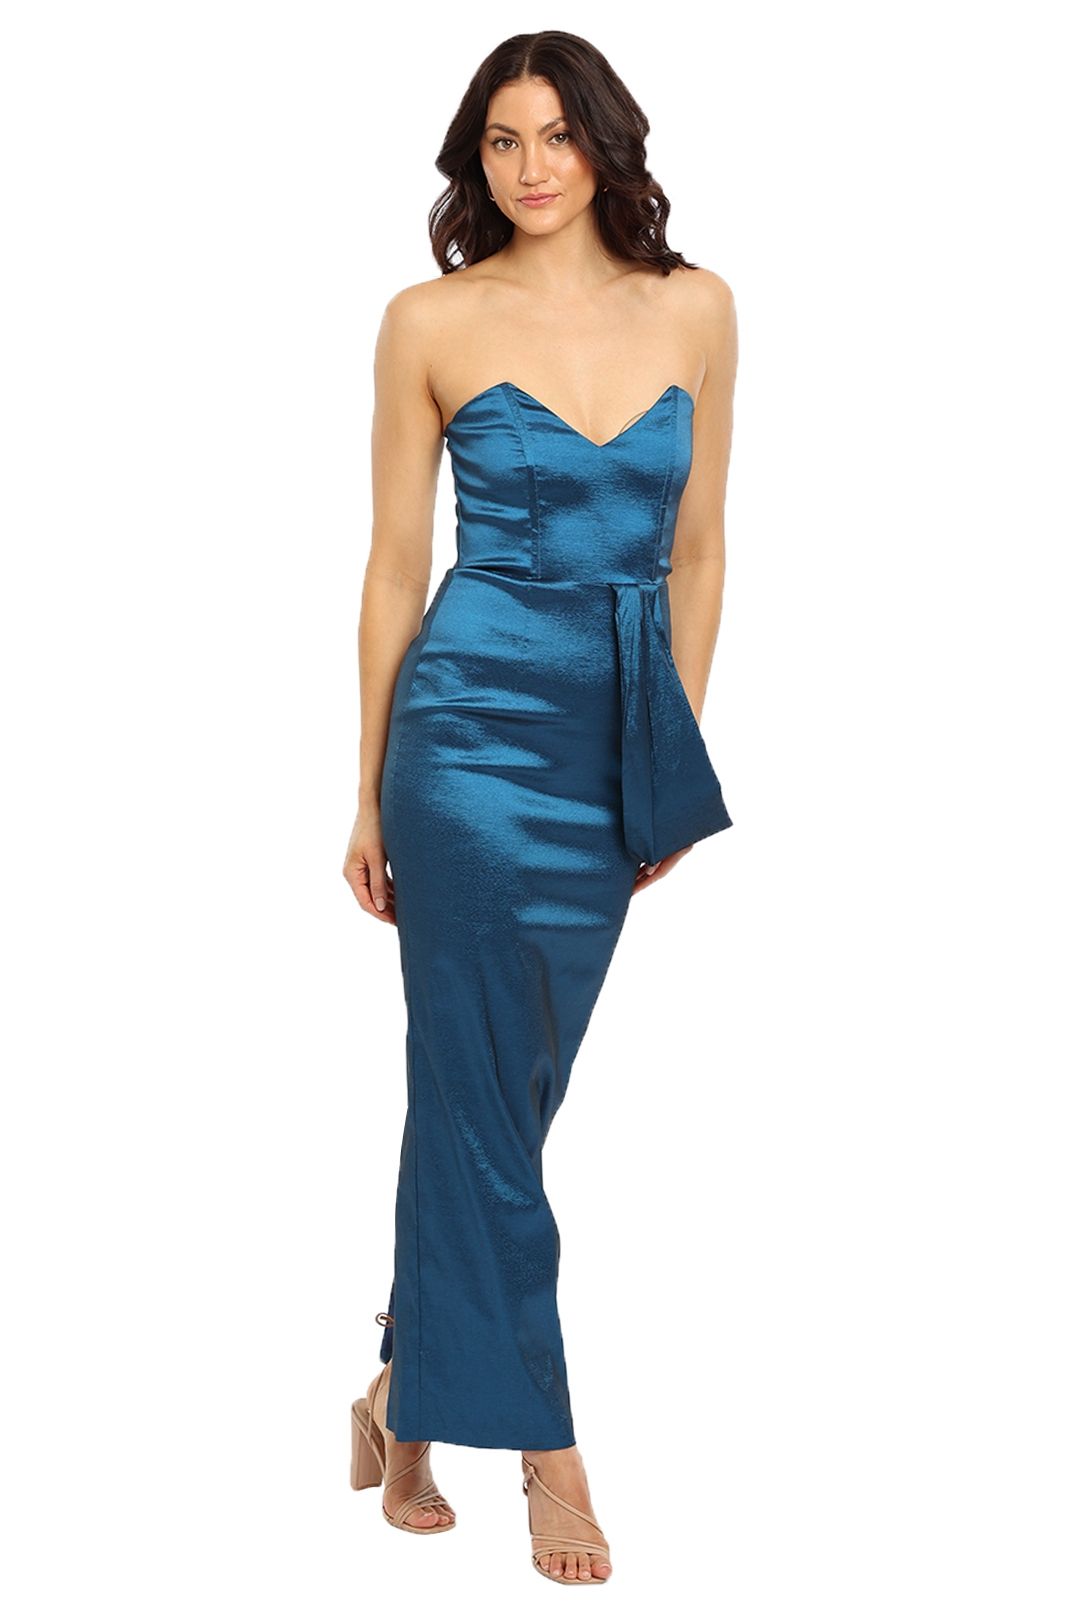 Elle Zeitoune Satin One Shoulder Dress Blue Maxi